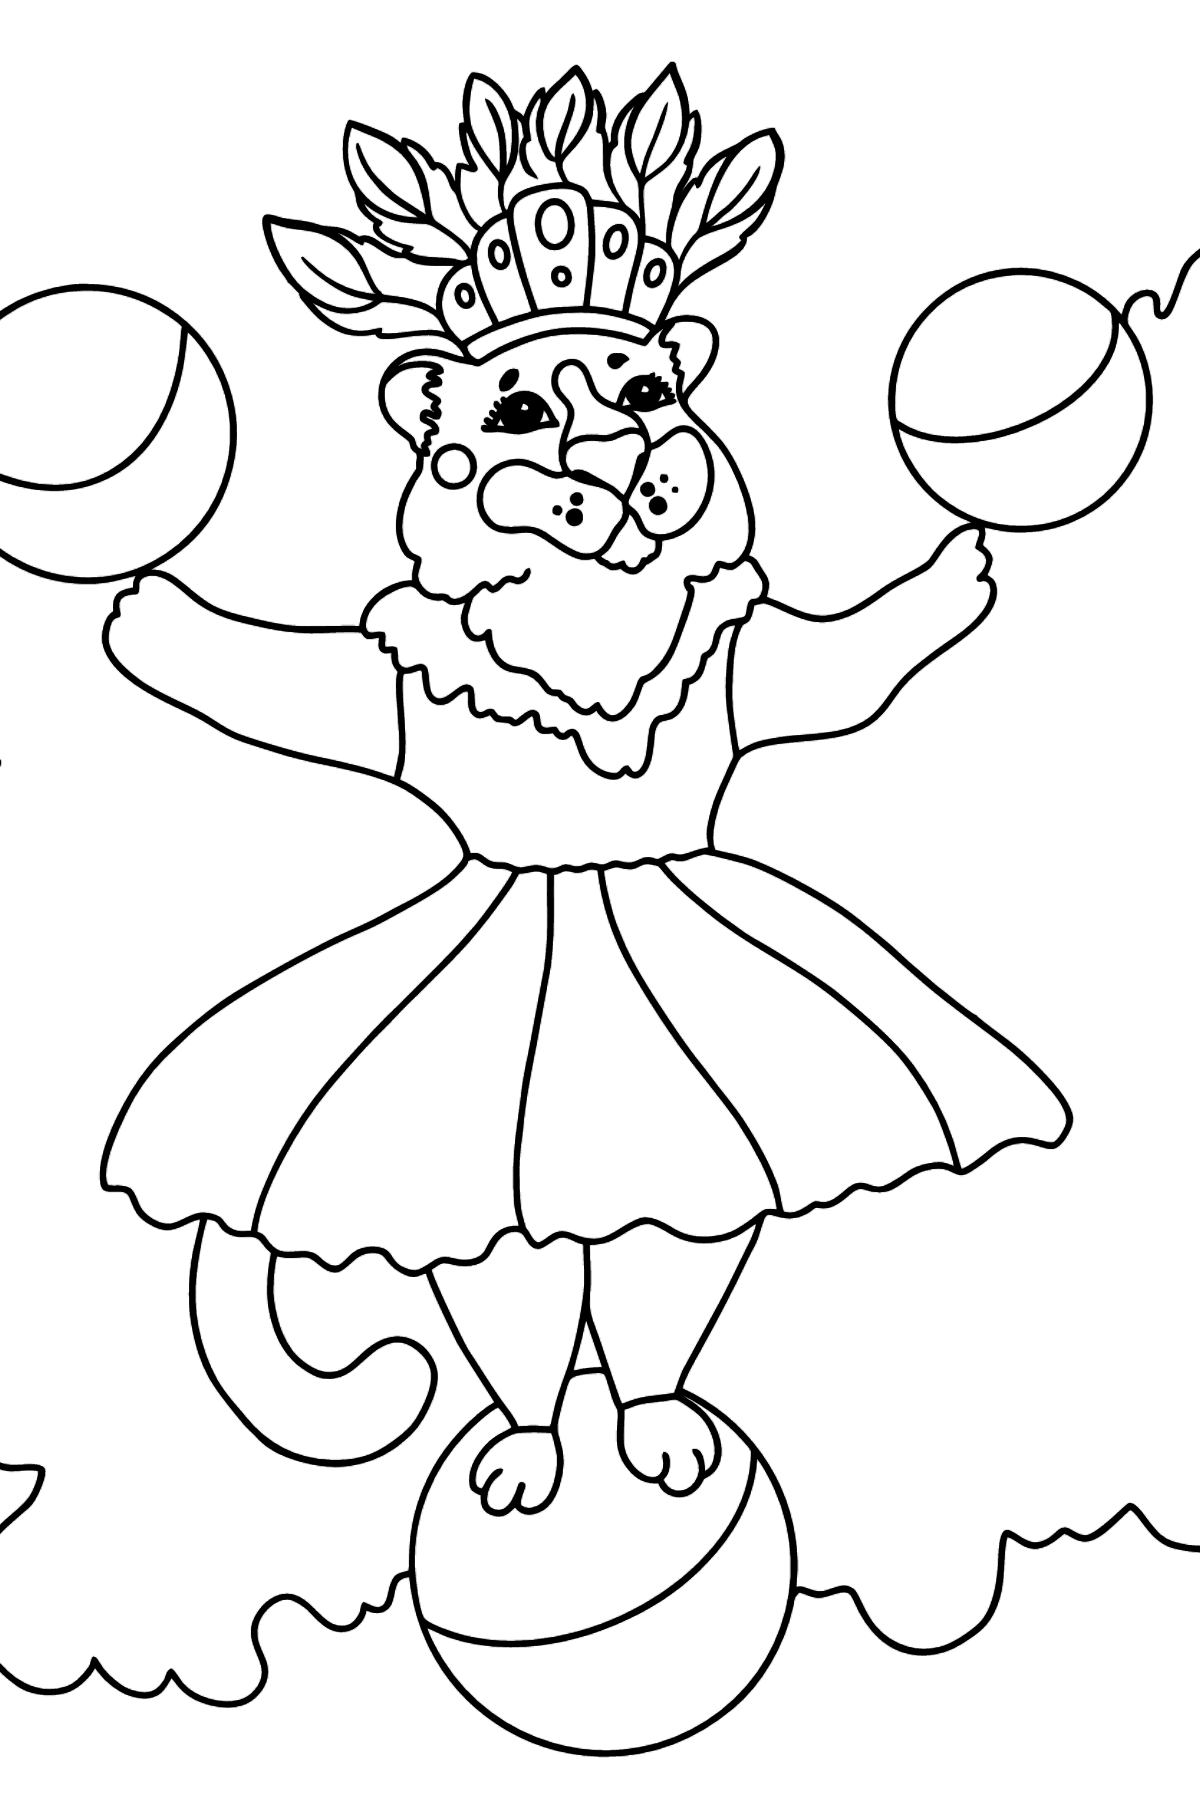 Desenho de tigresa no circo para colorir (difícil) - Imagens para Colorir para Crianças